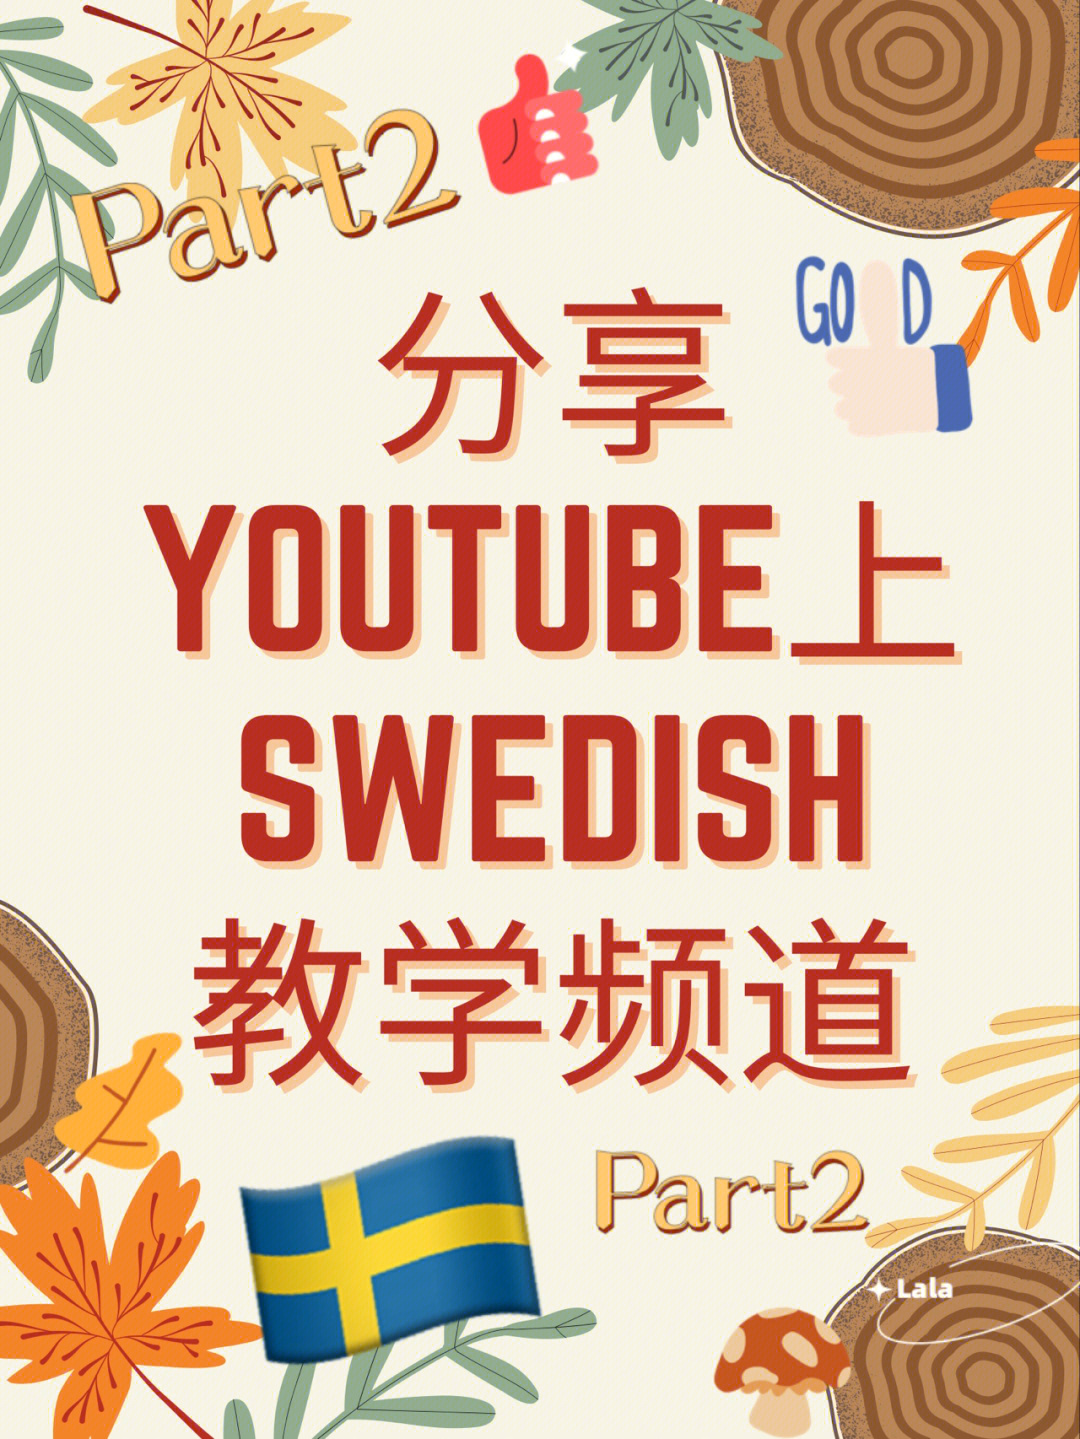 推分享youtube瑞典语教学频道part2